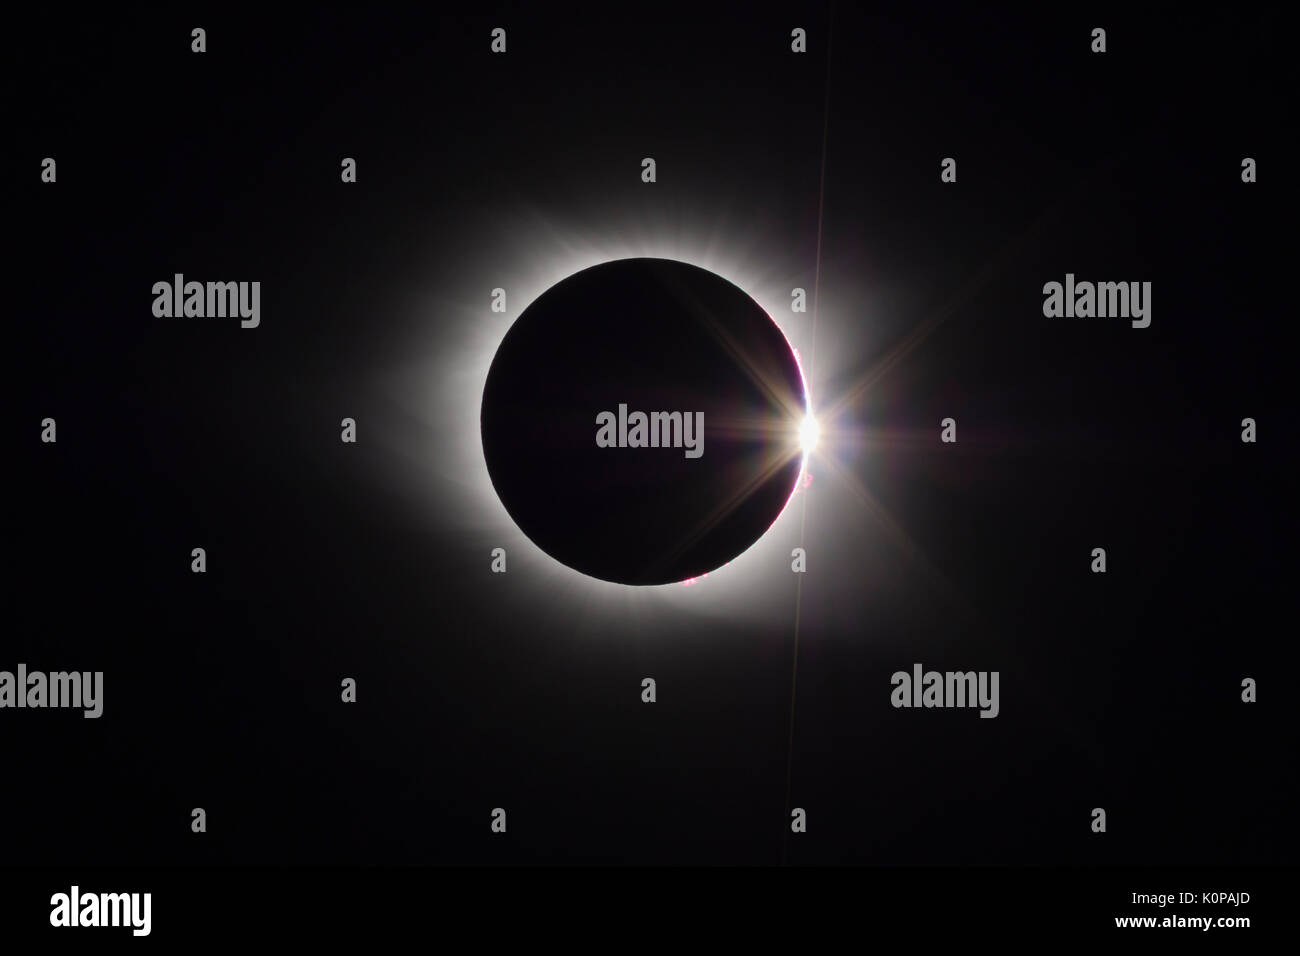 Corona der Sonne und der Diamantring-effekt sind am Ende der total eclipse Phase der großen amerikanischen Eclipse sichtbaren am 21. August 2017. Stockfoto